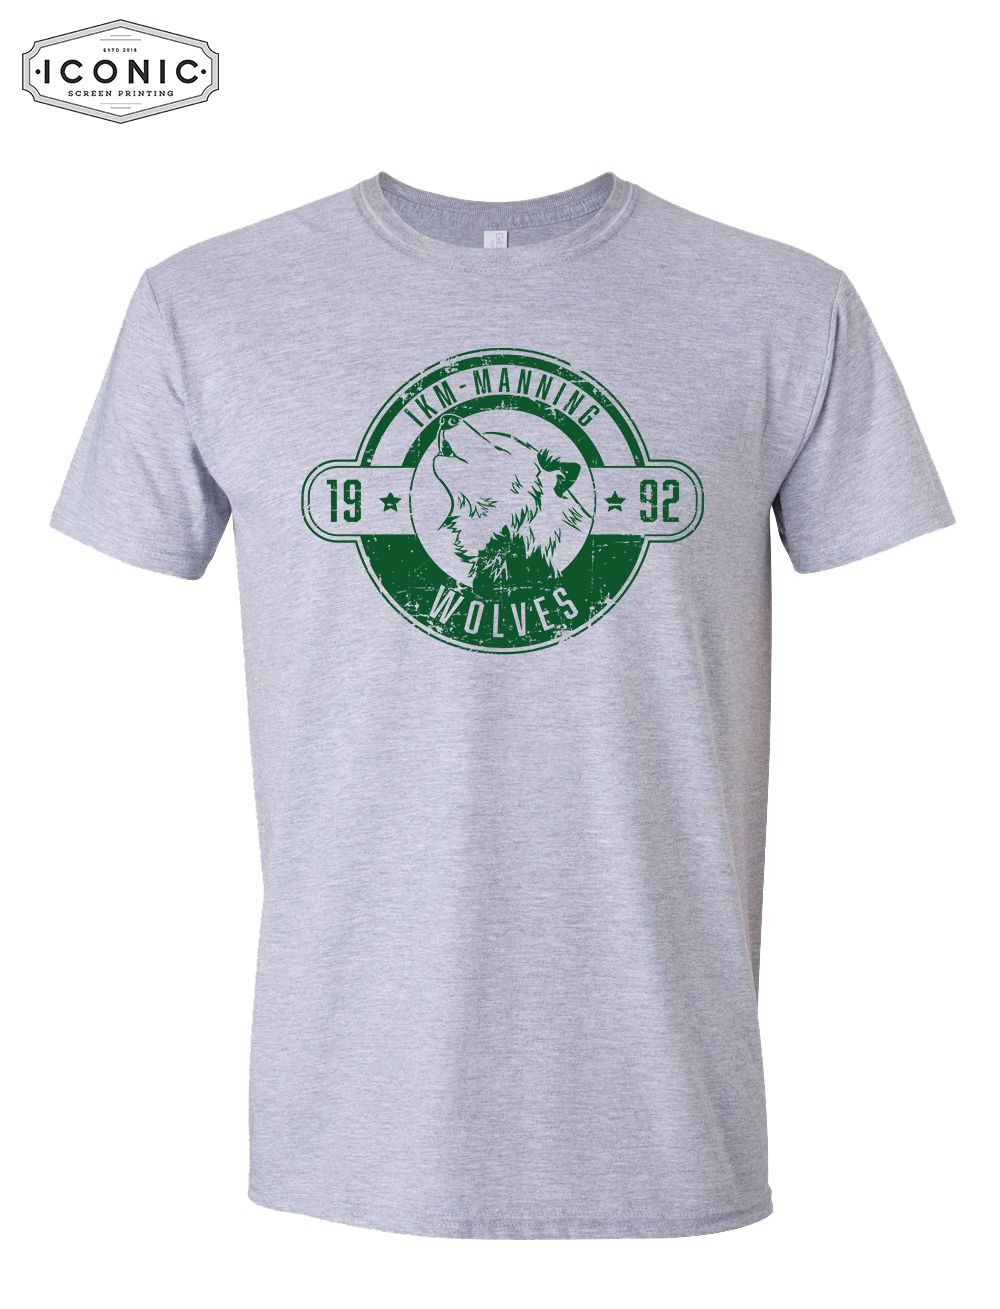 Est 1992- Softstyle T-shirt